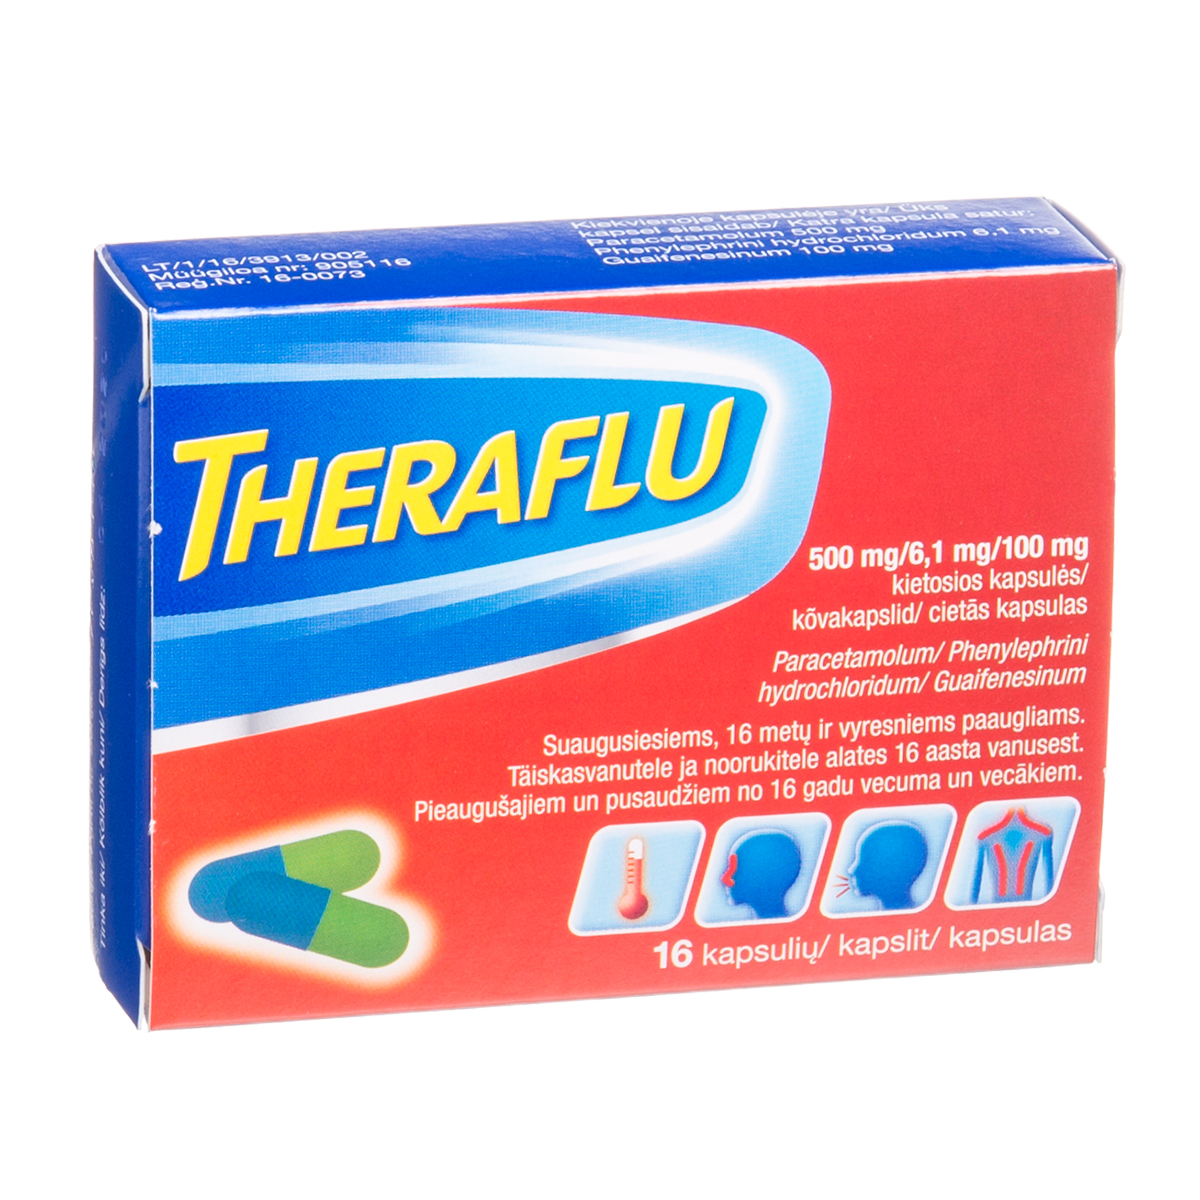 THERAFLU, 500 mg/6,1 mg/100 mg, kietosios kapsulės, N16